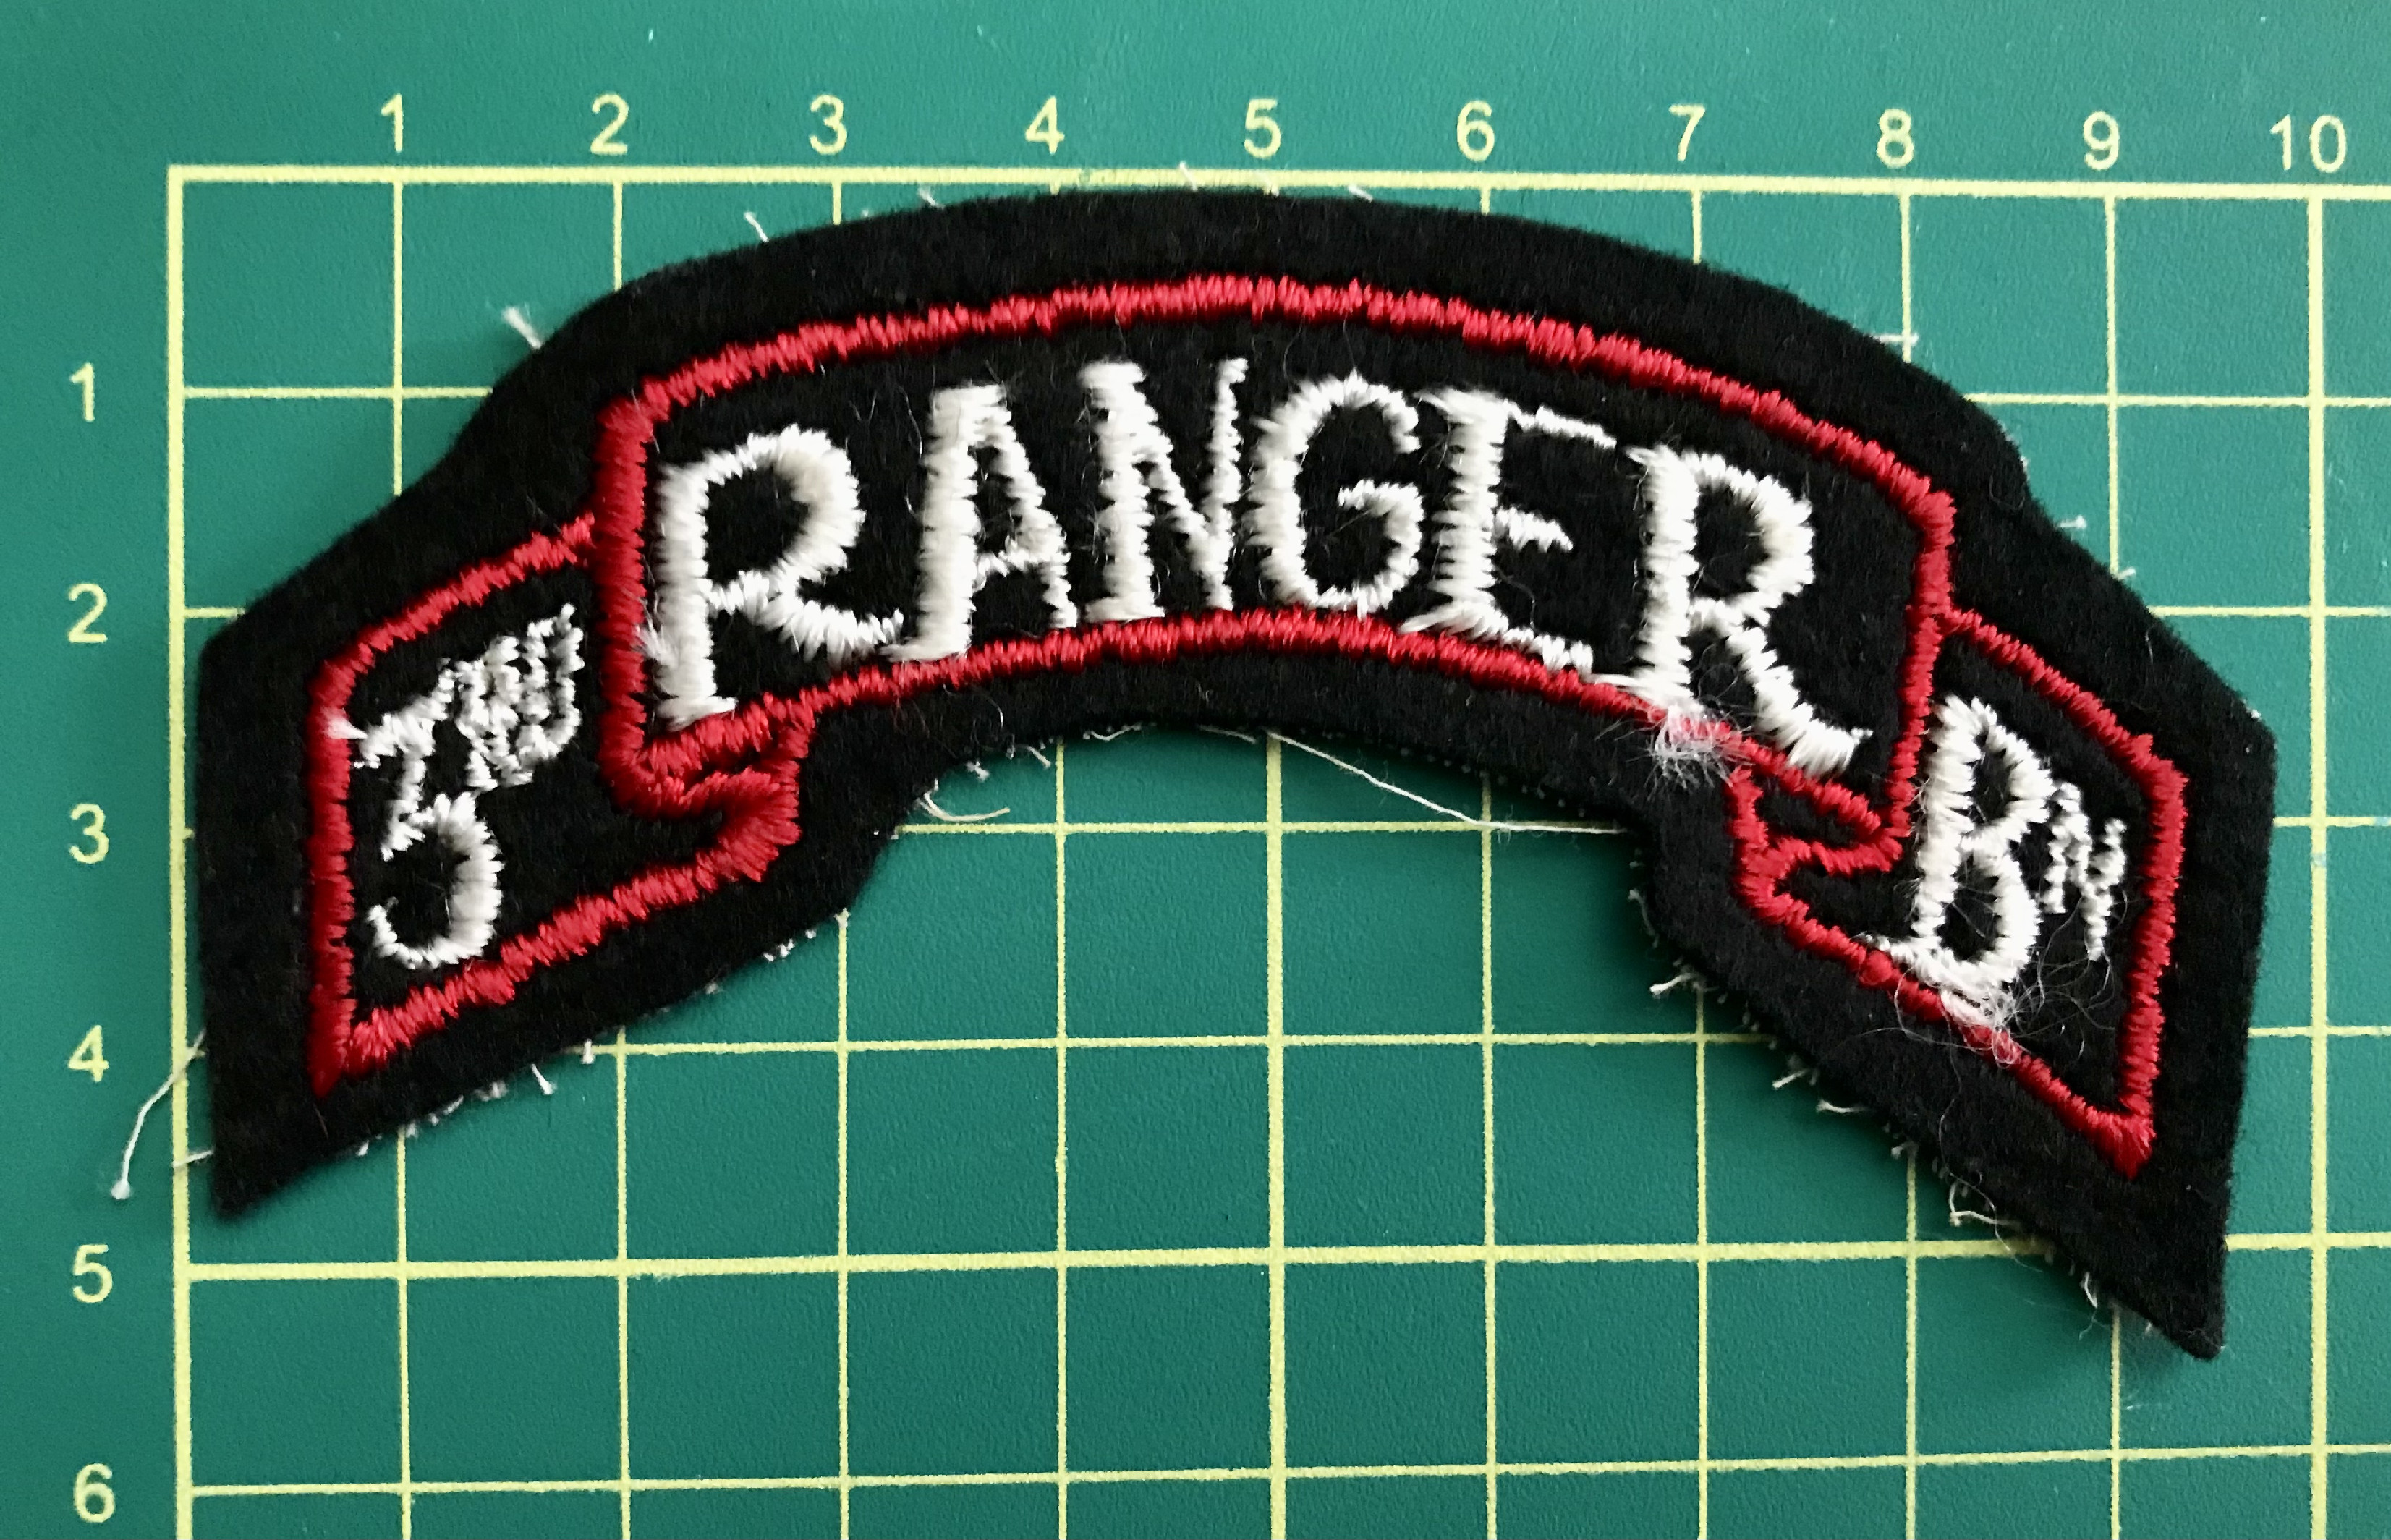 Oblouček 3rd Ranger Bn. - WW II